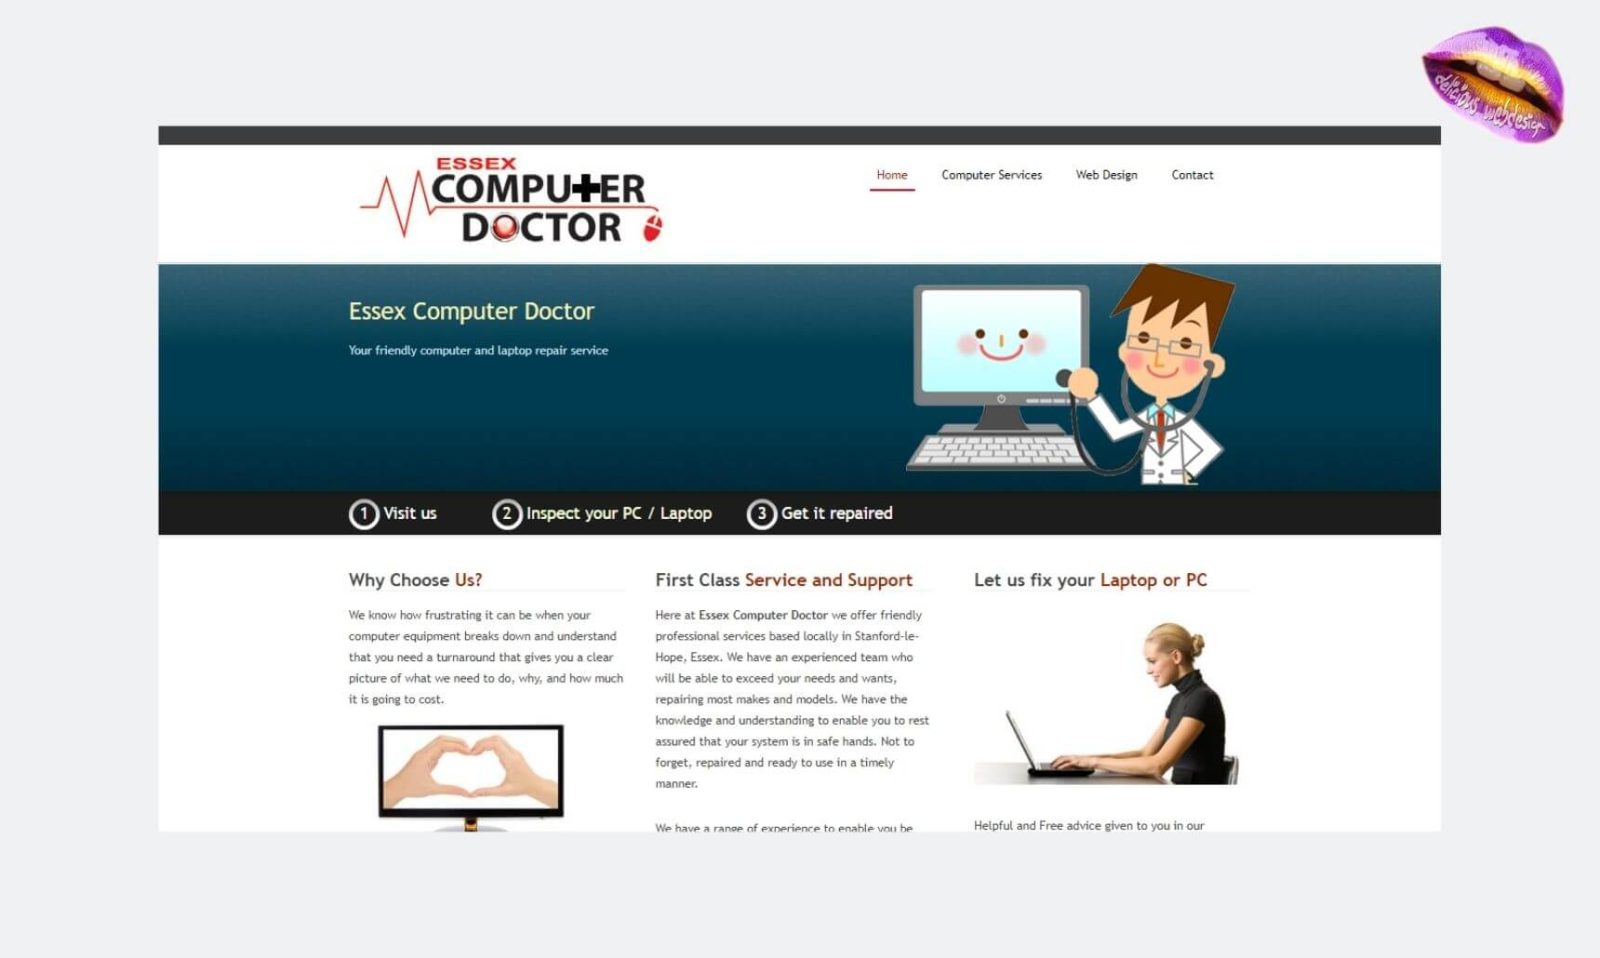 Essex Computer Doctor